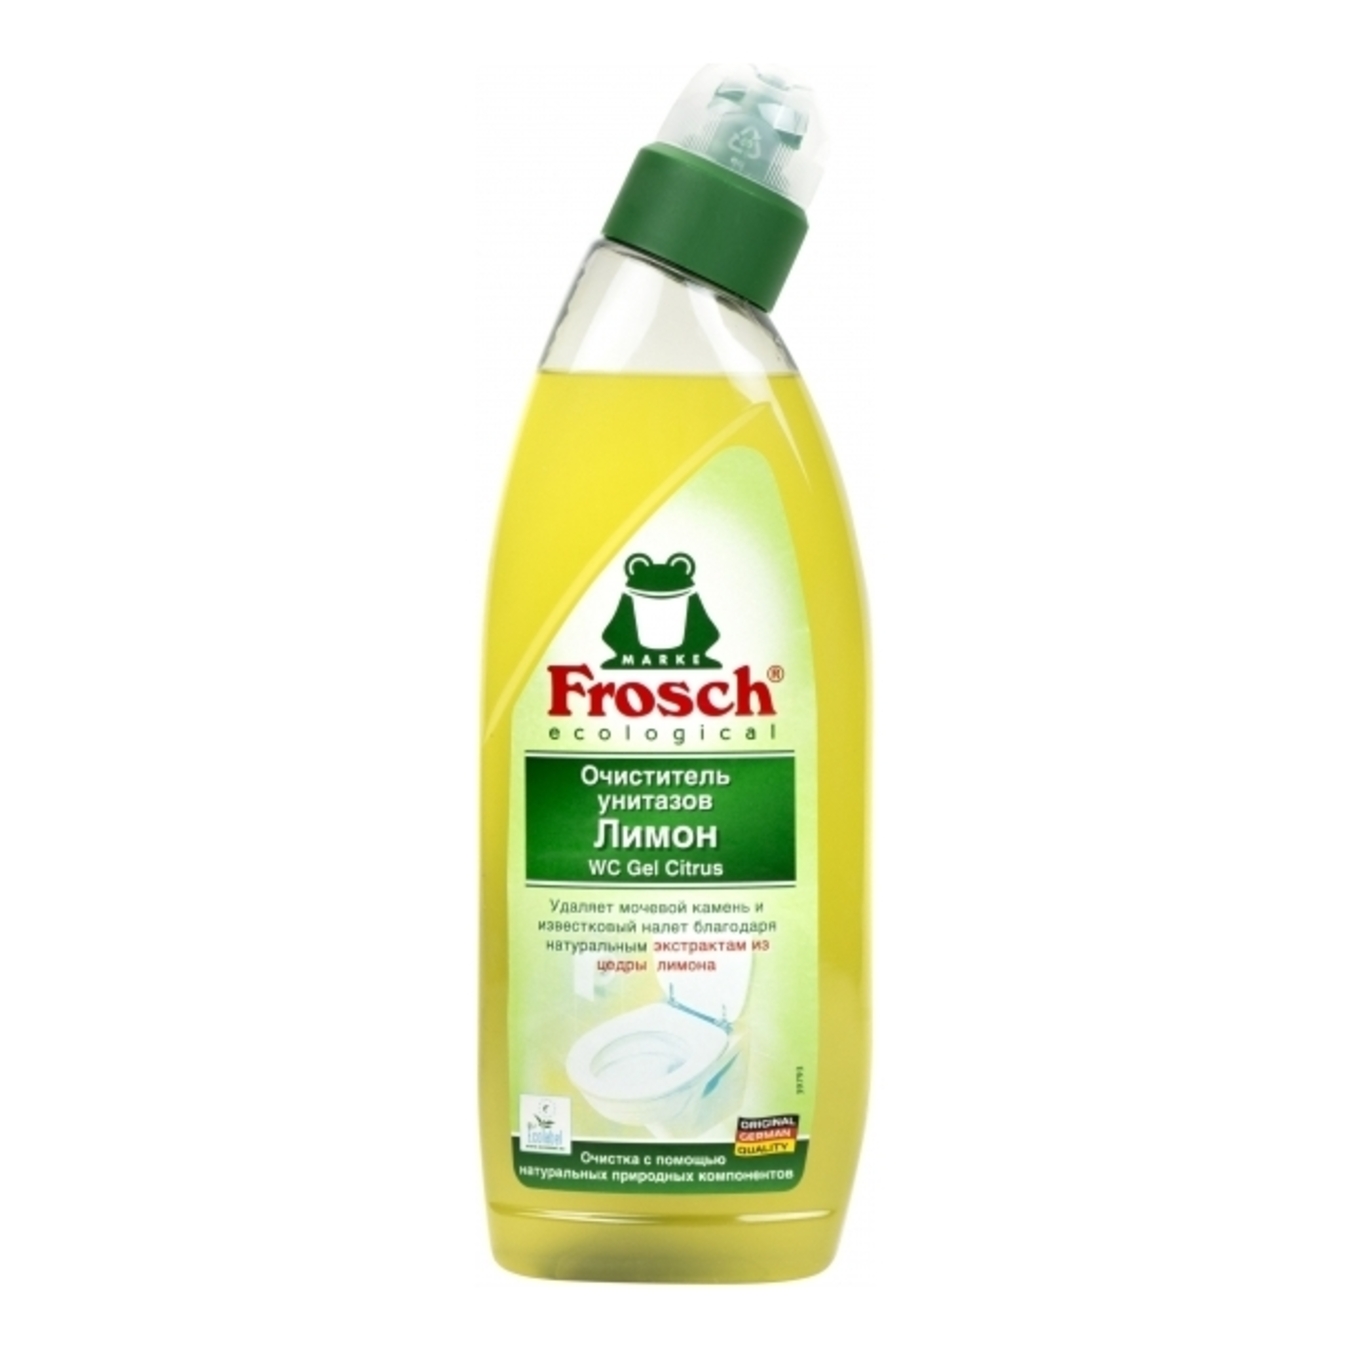 Frosch Toilet gel Lemon 750l